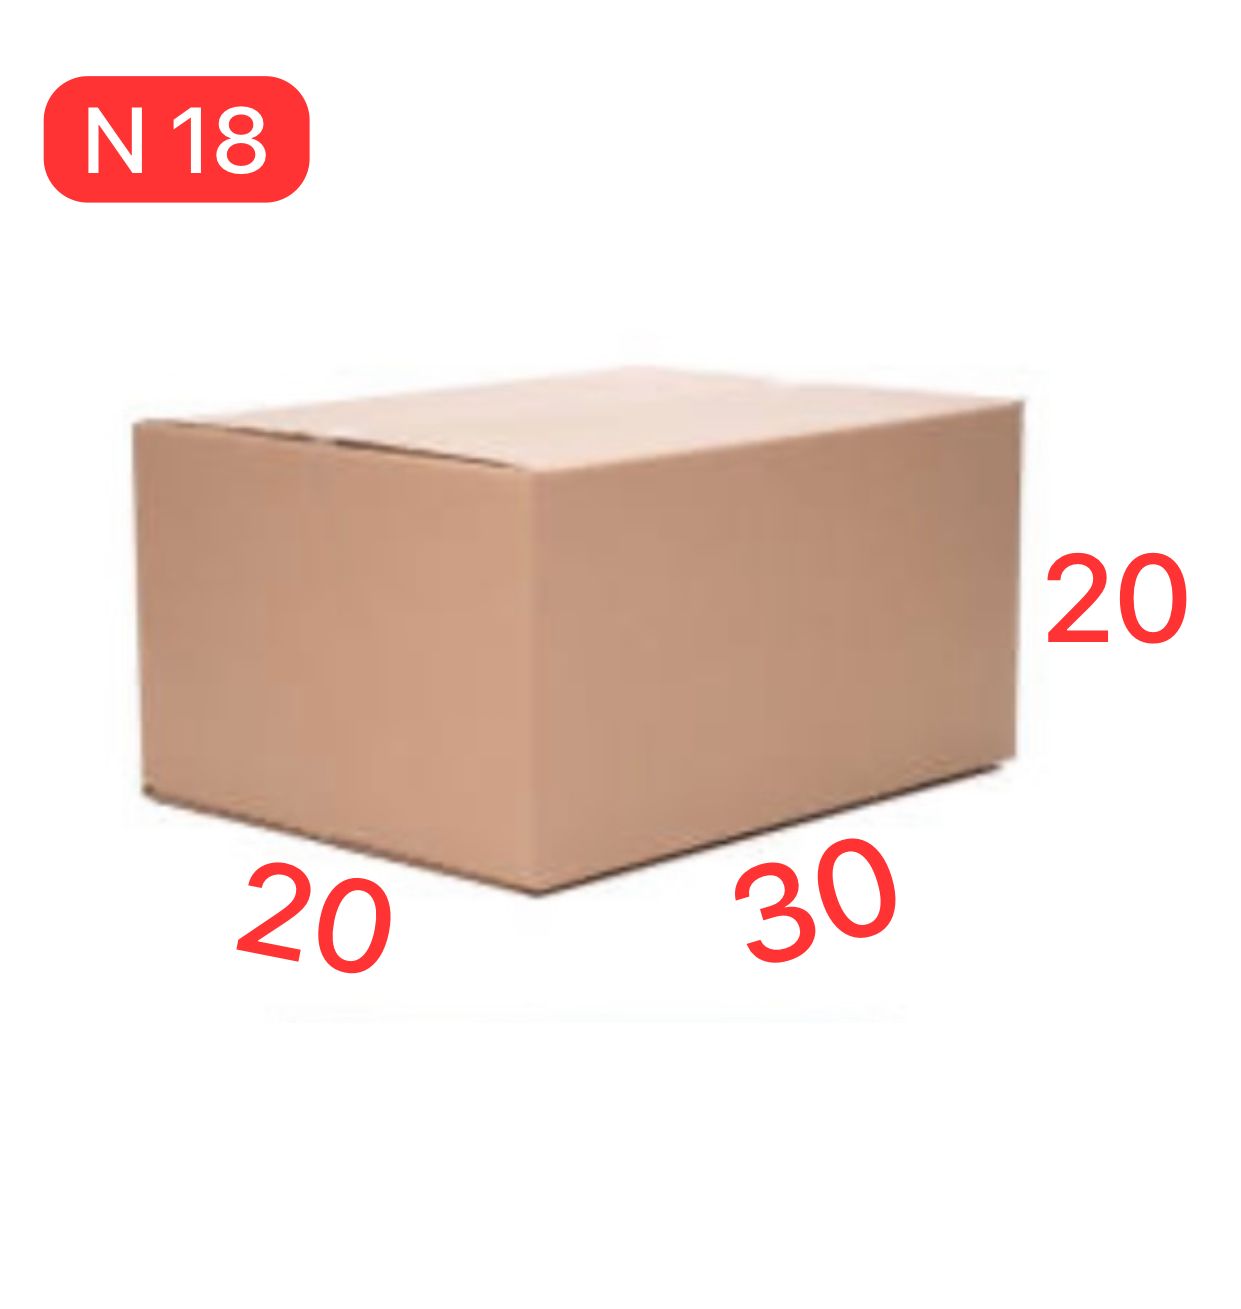 Caixa de Papelão N18 – 30x20x20 - Imagem 1